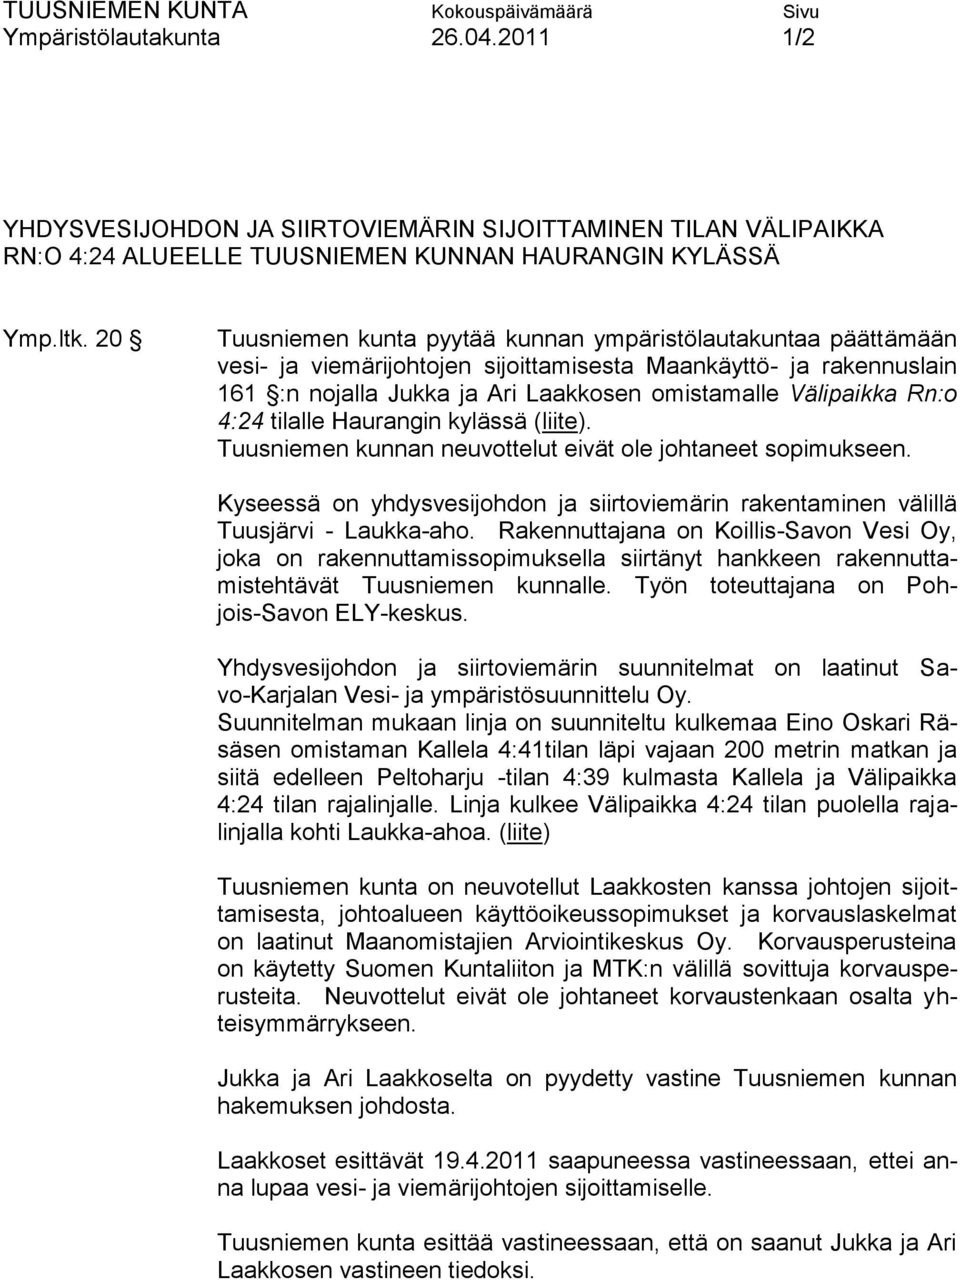 Rn:o 4:24 tilalle Haurangin kylässä (liite). Tuusniemen kunnan neuvottelut eivät ole johtaneet sopimukseen. Kyseessä on yhdysvesijohdon ja siirtoviemärin rakentaminen välillä Tuusjärvi - Laukka-aho.